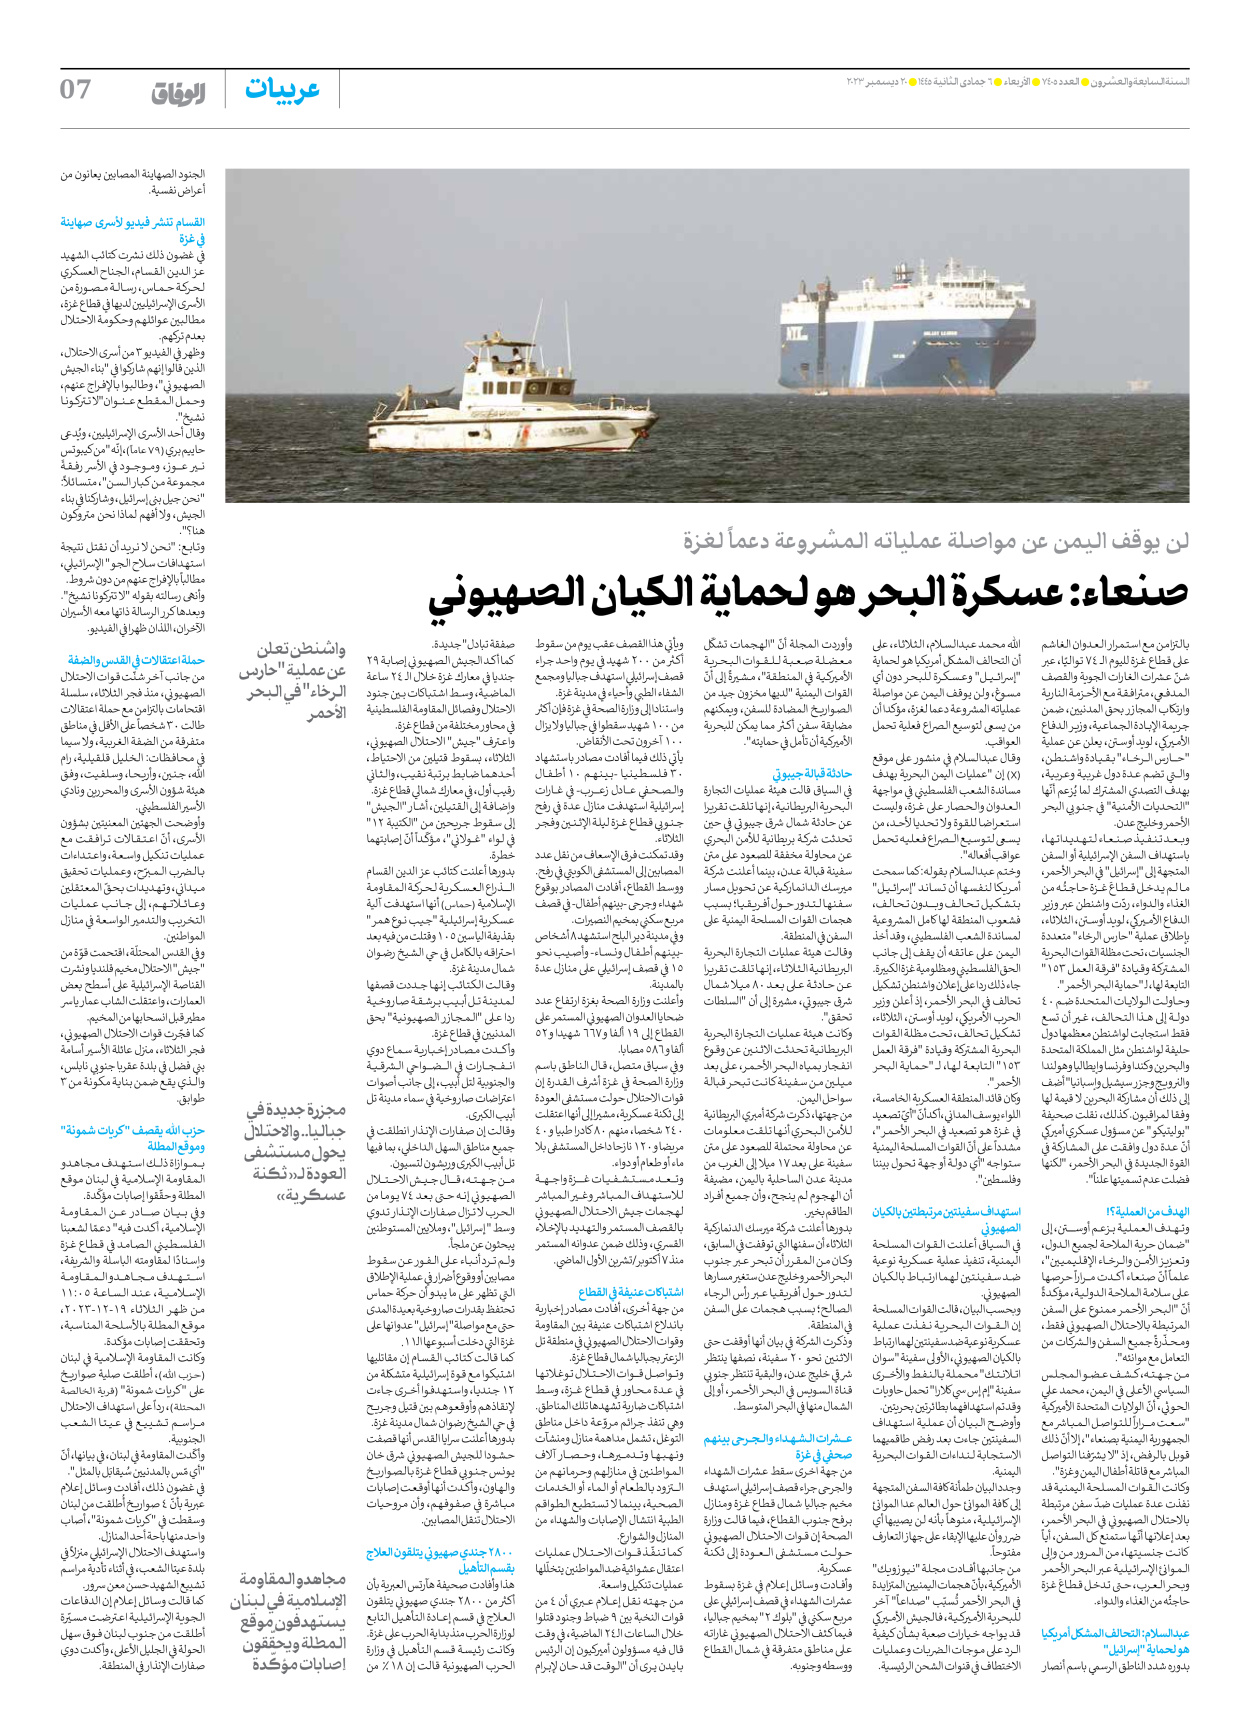 صحیفة ایران الدولیة الوفاق - العدد سبعة آلاف وأربعمائة وخمسة - ٢٠ ديسمبر ٢٠٢٣ - الصفحة ۷